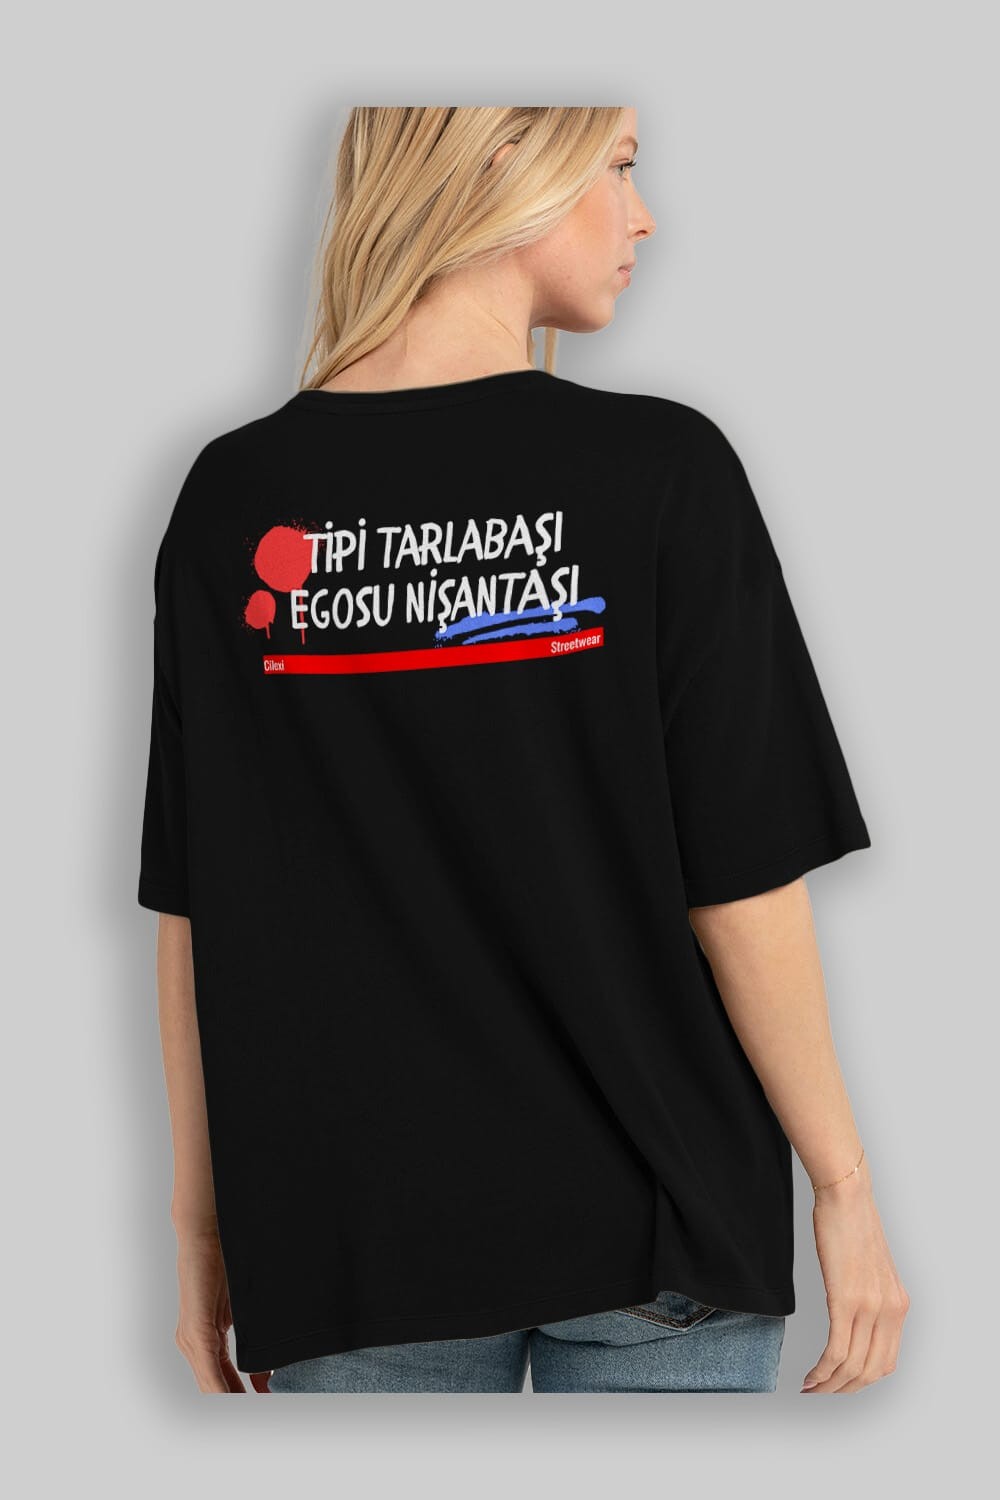 Tipi Tarlabaşı , Egosu Nişantaşı Yazılı Arka Baskılı Oversize t-shirt Erkek Kadın Unisex